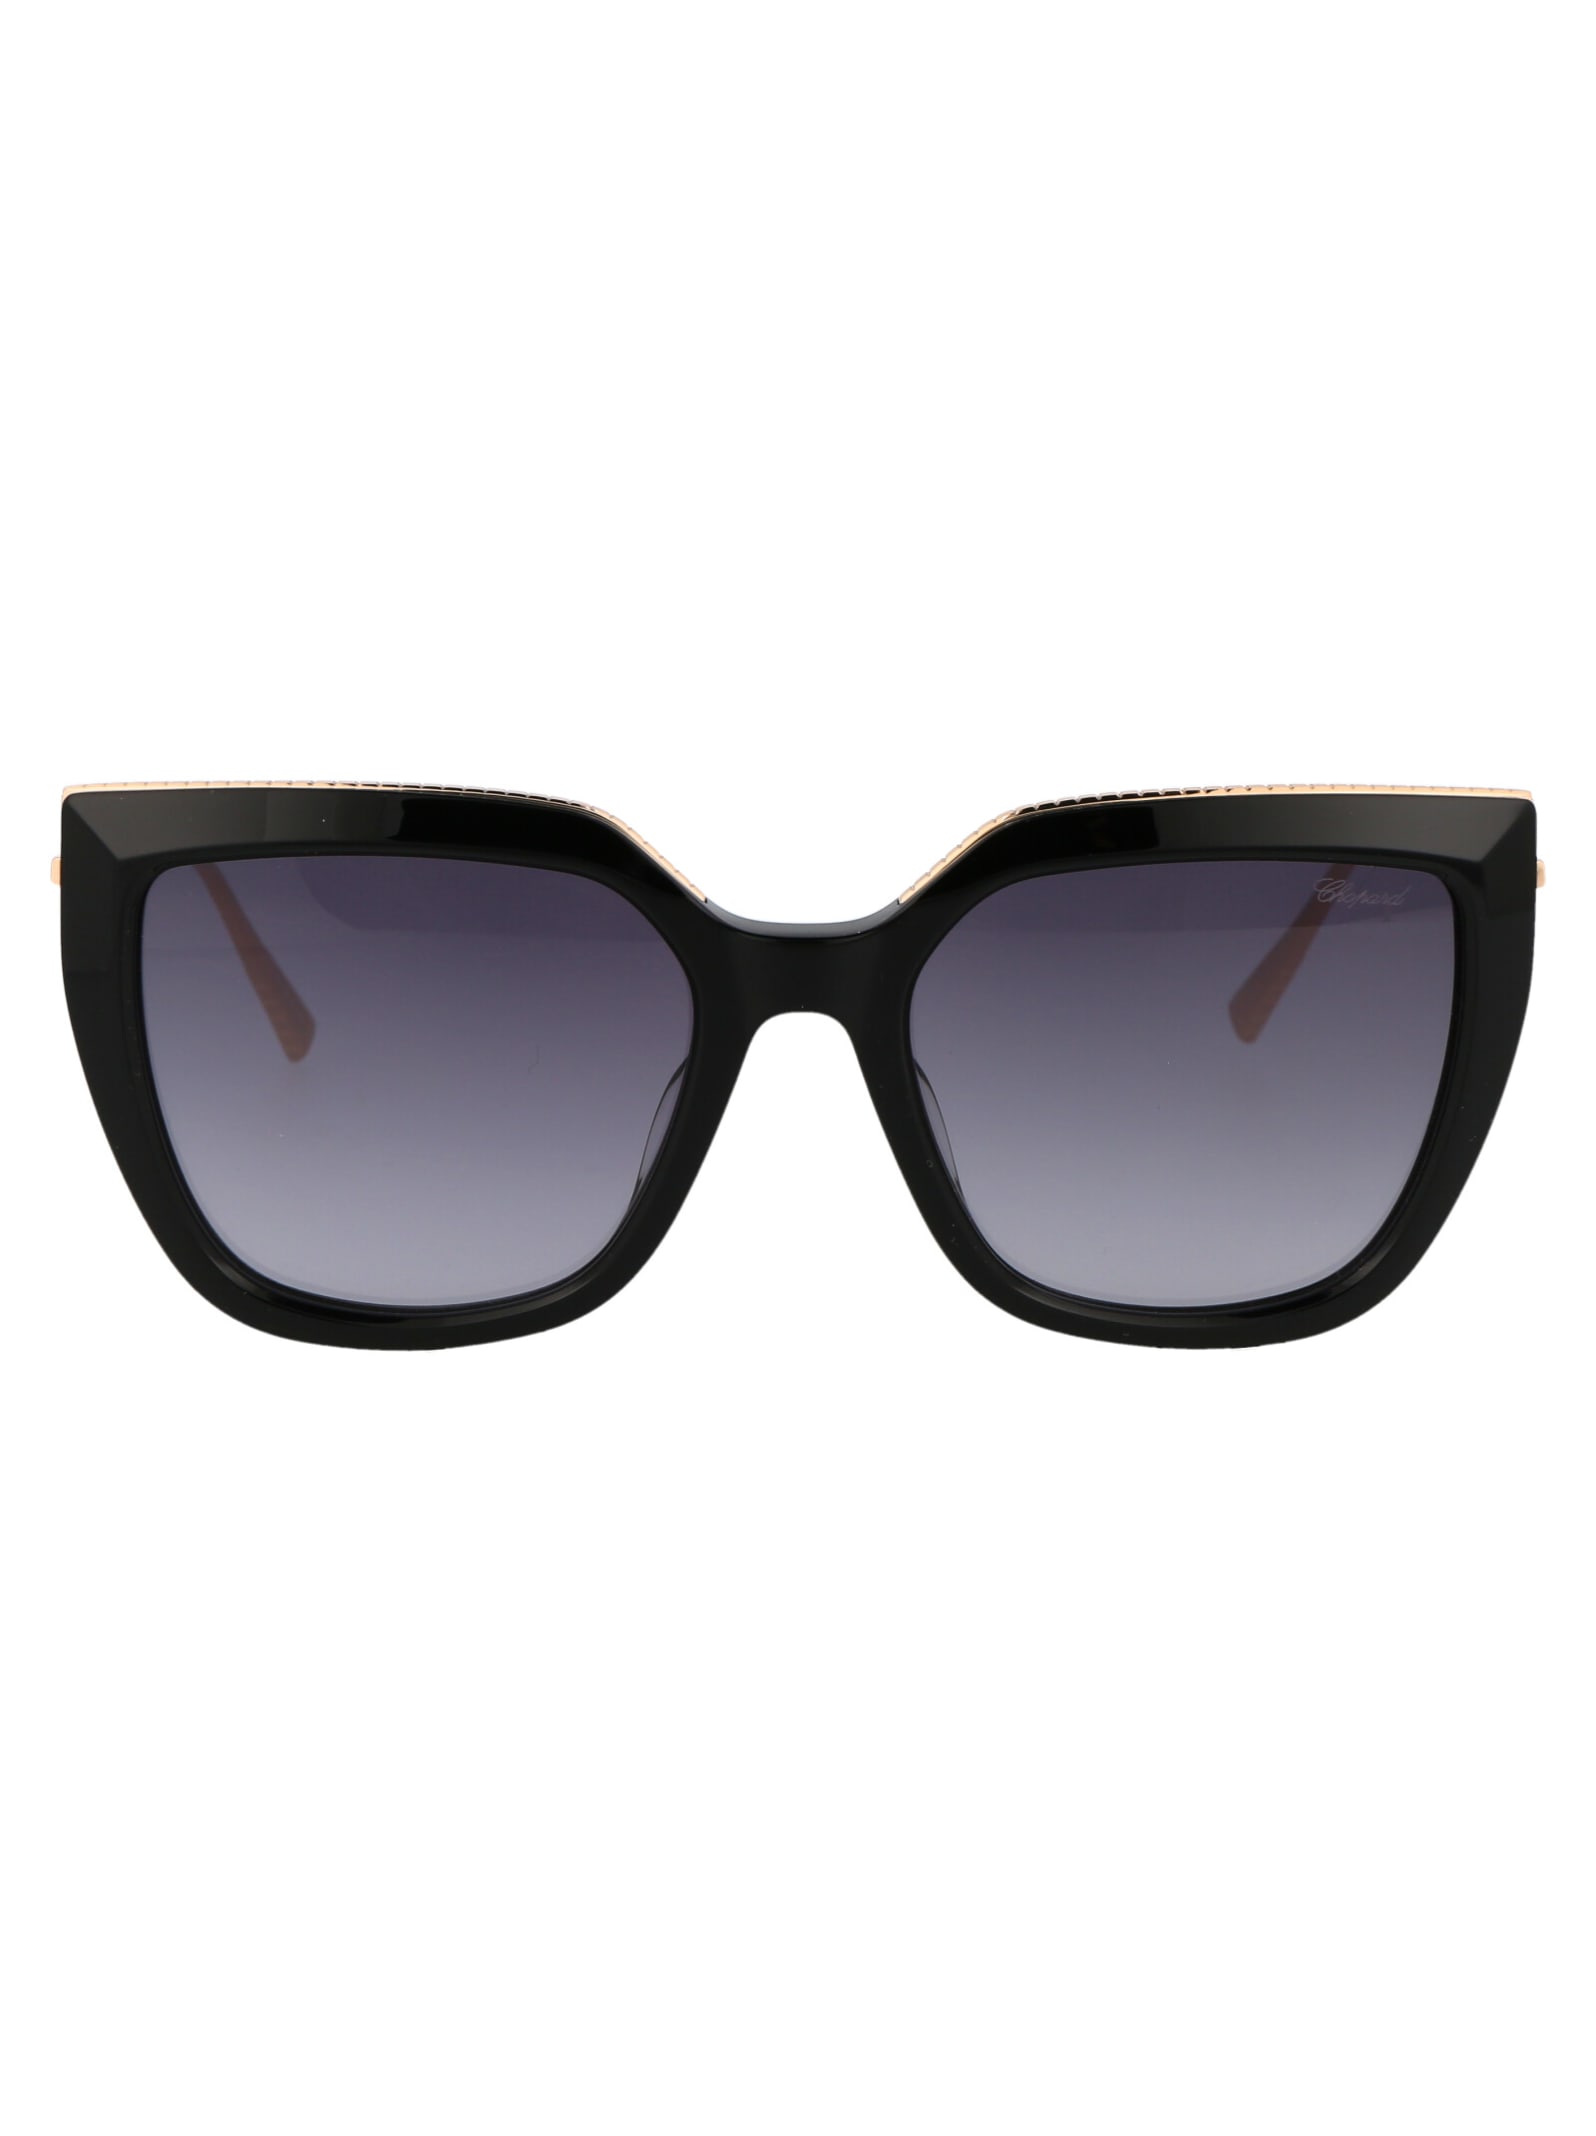 Chopard Sch913m Sunglasses